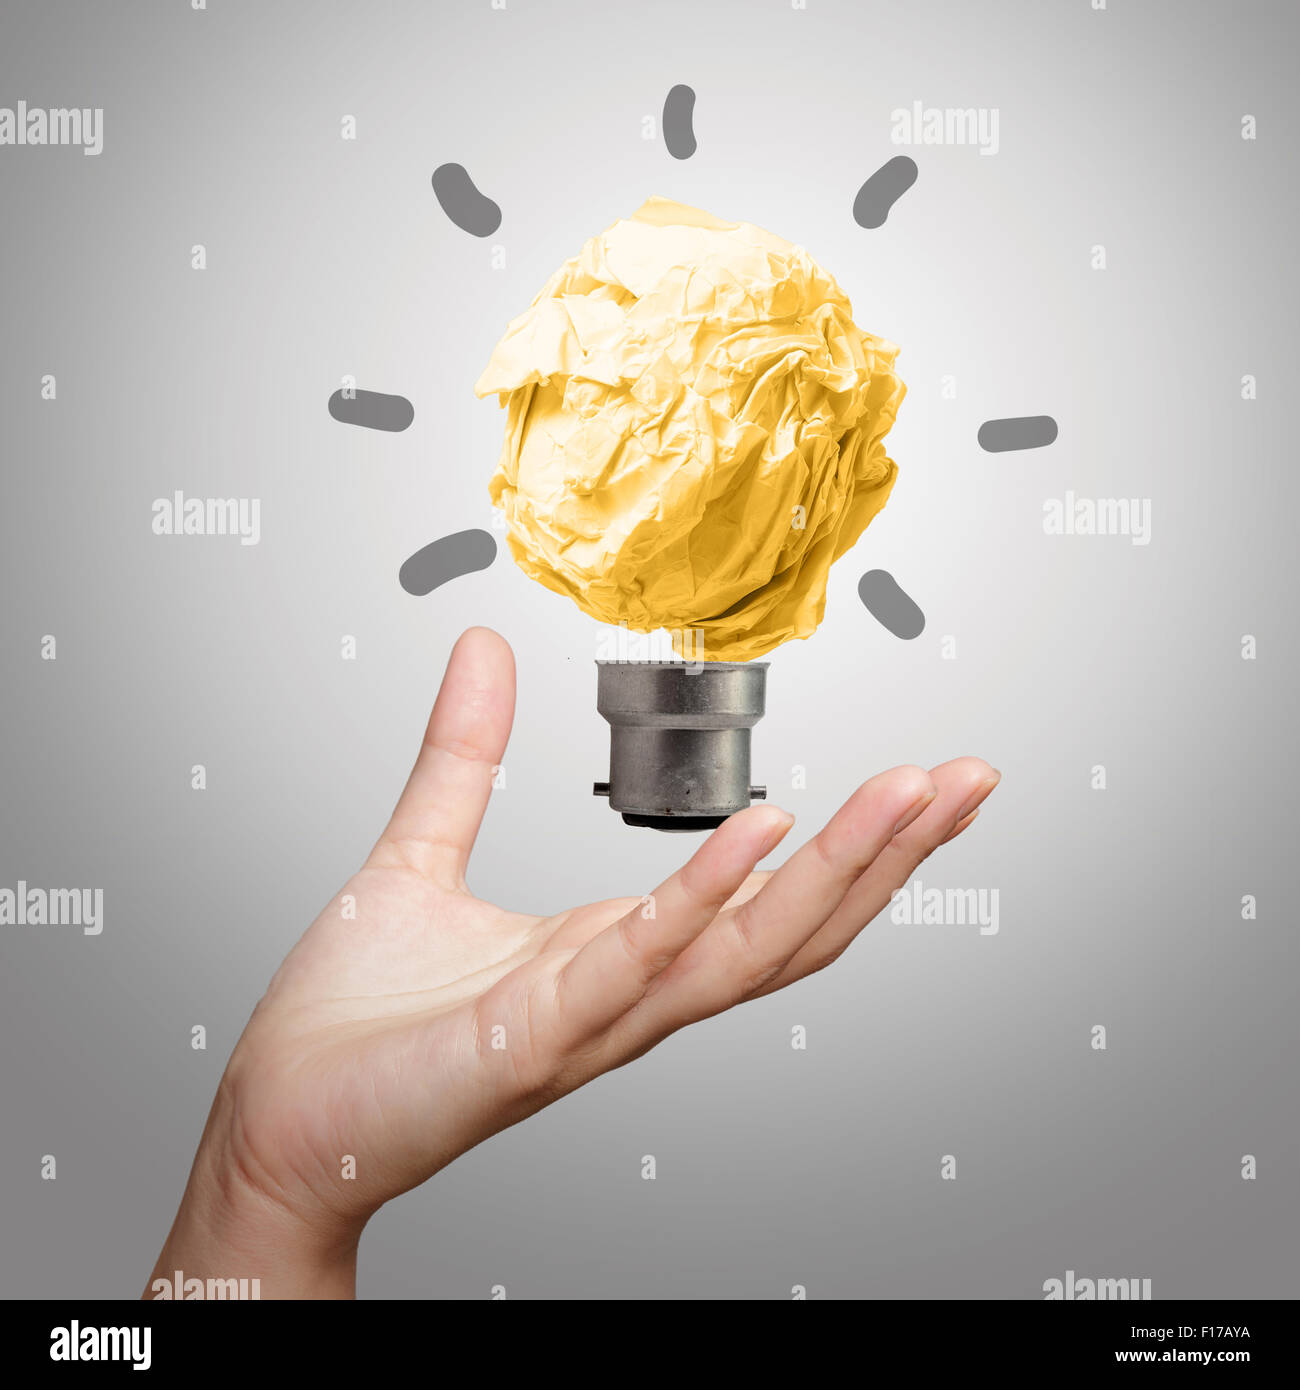 La lampe de la main montrant papier froissé comme concept créatif Banque D'Images